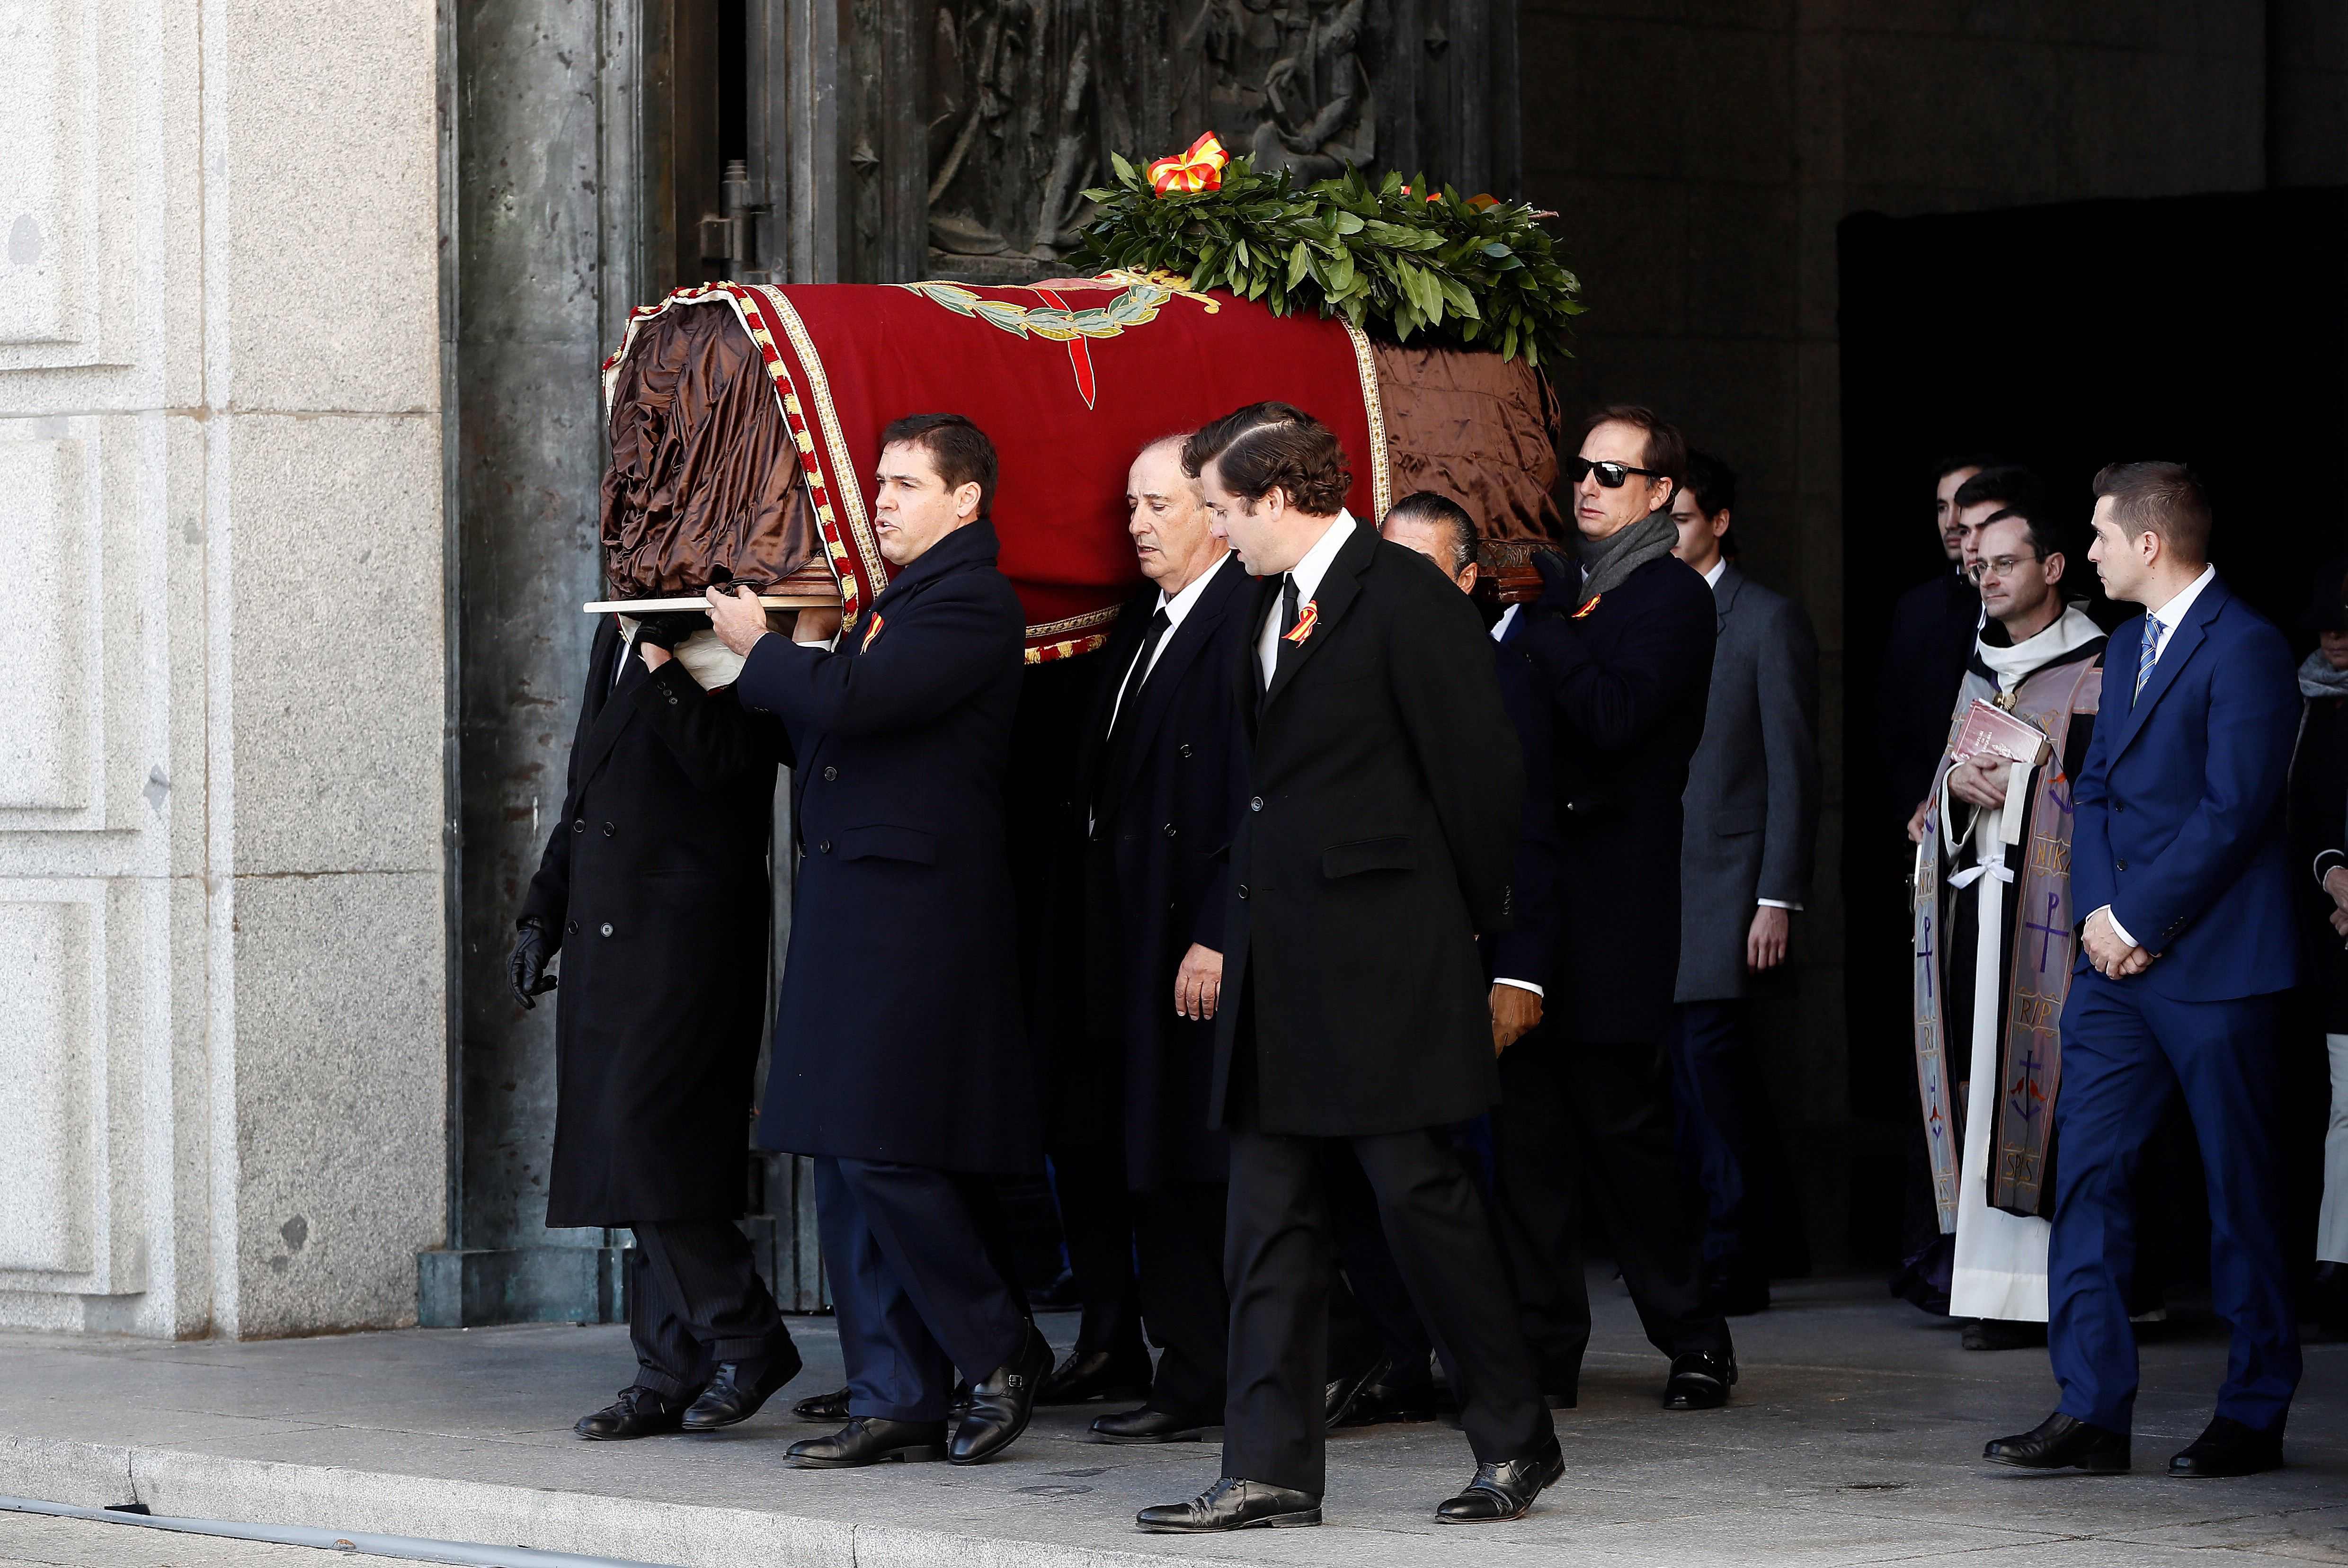 Tras 44 años en el Valle de los Caídos los restos de Franco son extraídos de su tumba. (Foto Prensa Libre: AFP)